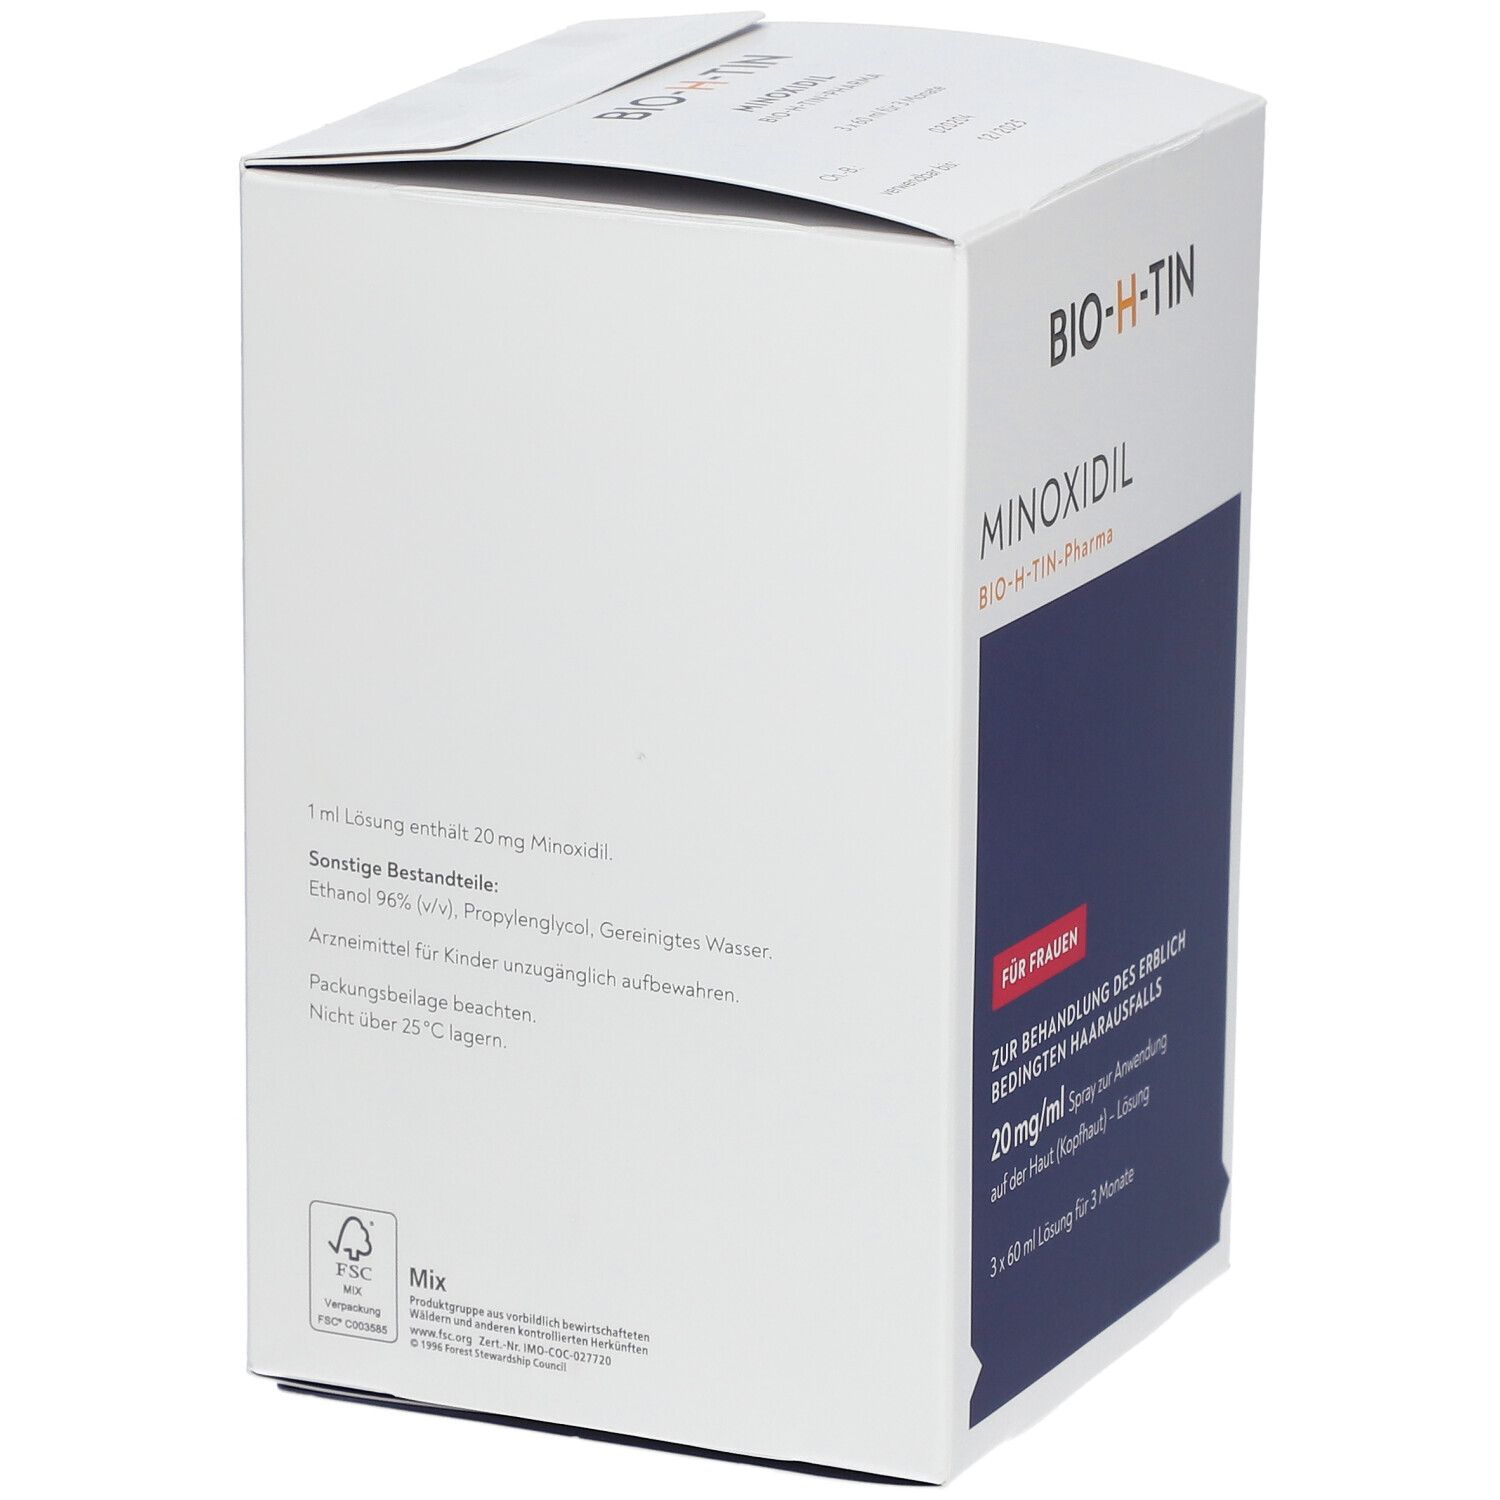 MINOXIDIL BIO-H-TIN® 20 mg/ml für Frauen